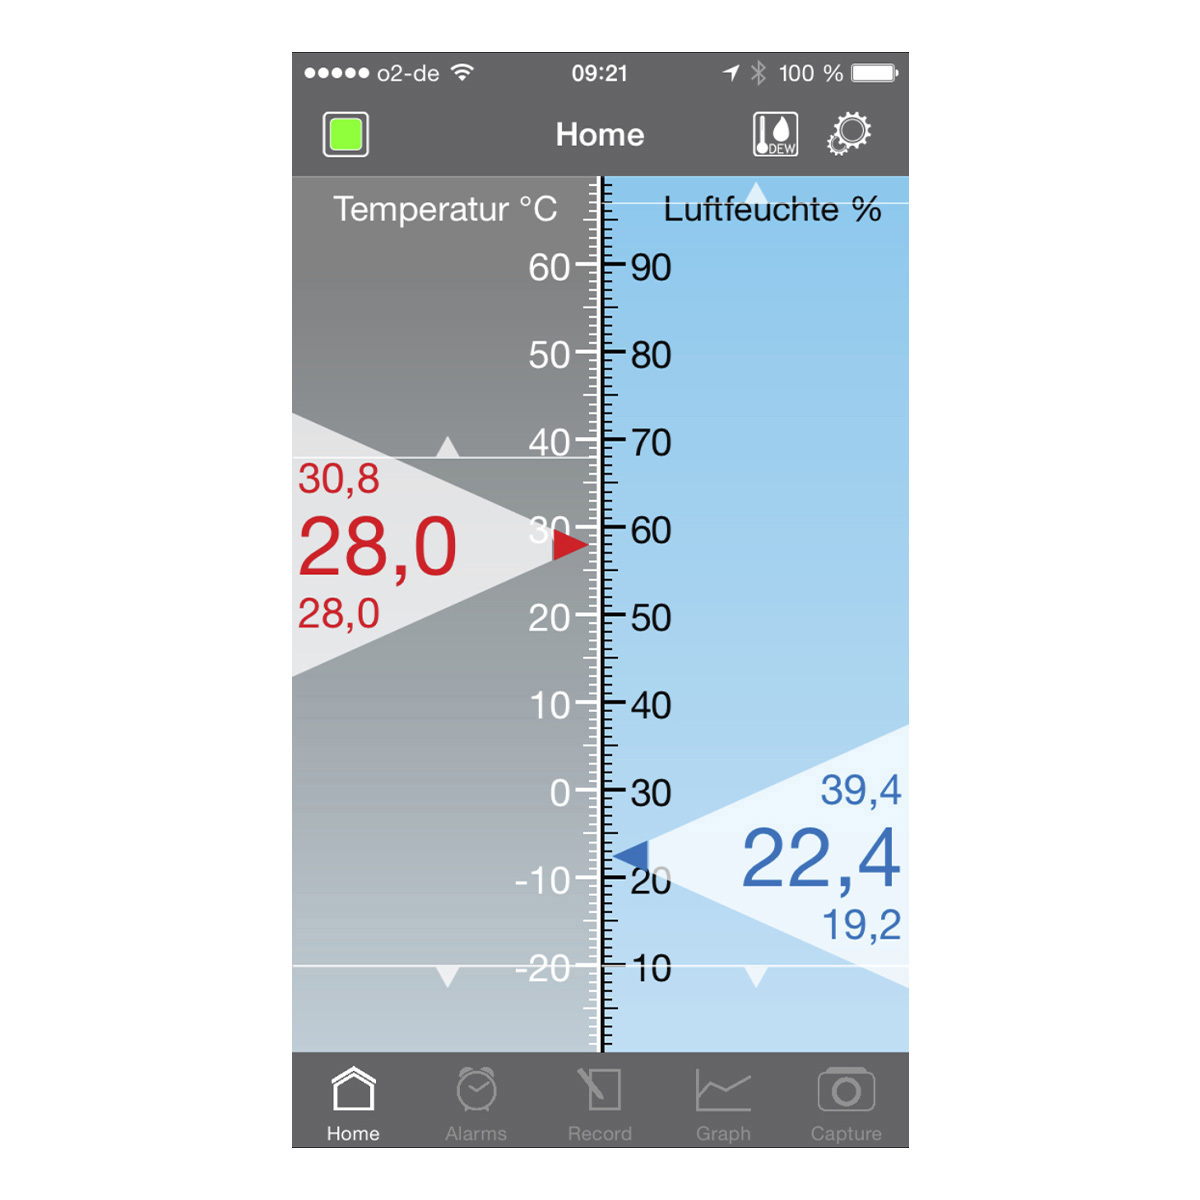 30-5035-01-thermo-hygrometer-für-smartphones-smarthy-app-anwendung4-1200x1200px.jpg